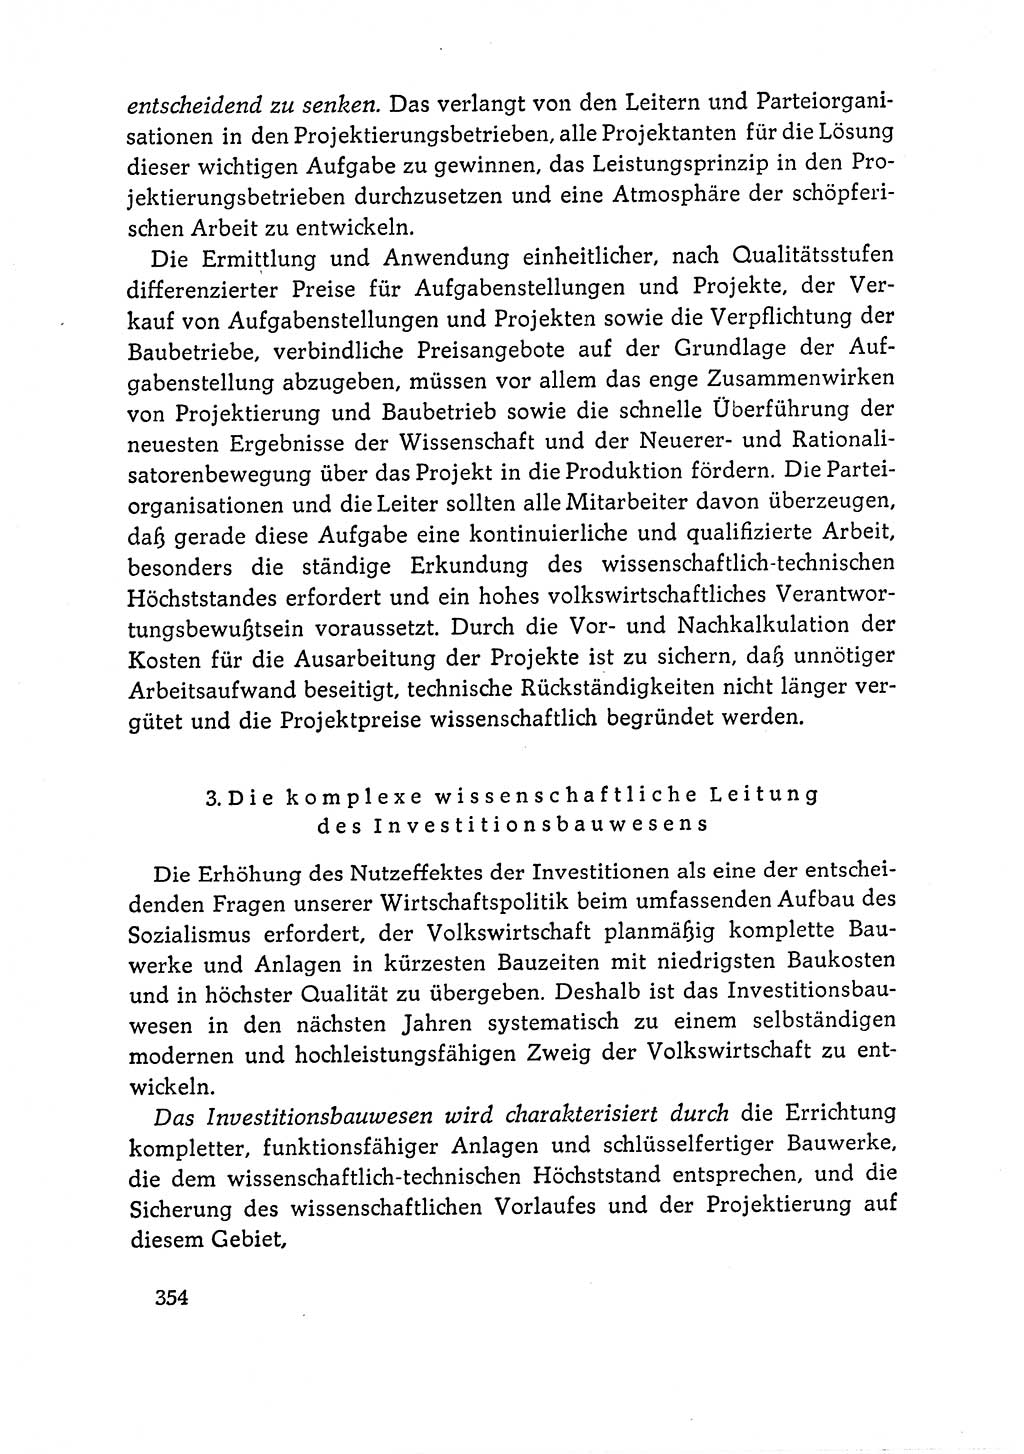 Dokumente der Sozialistischen Einheitspartei Deutschlands (SED) [Deutsche Demokratische Republik (DDR)] 1964-1965, Seite 354 (Dok. SED DDR 1964-1965, S. 354)